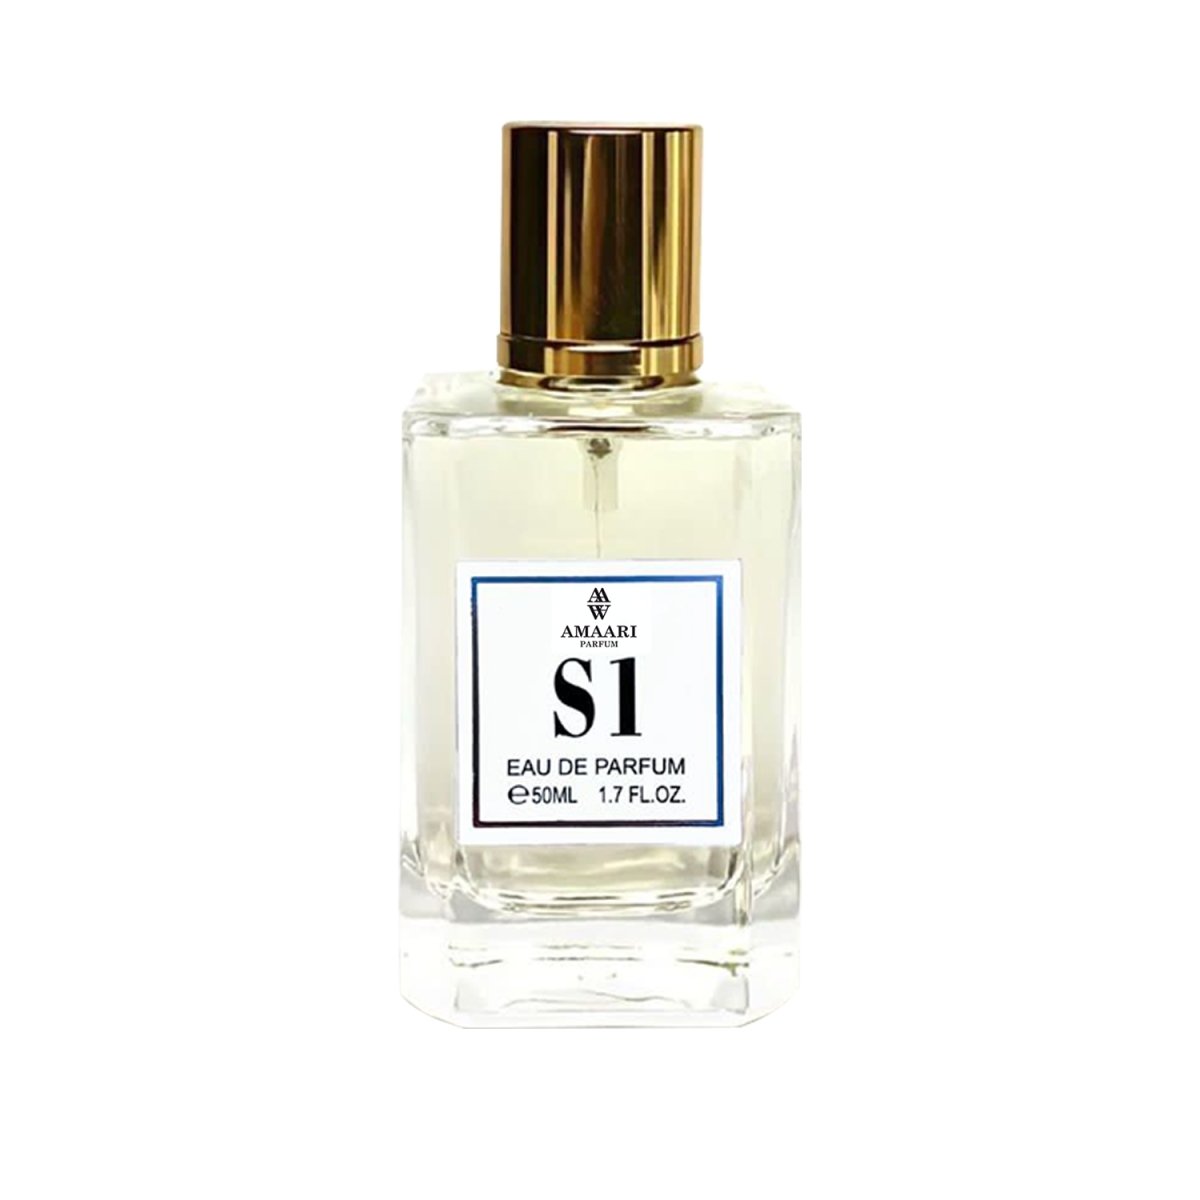 S1 - Alternative to Armani Si - (50ml Eau de Parfum) - Amaari Parfum